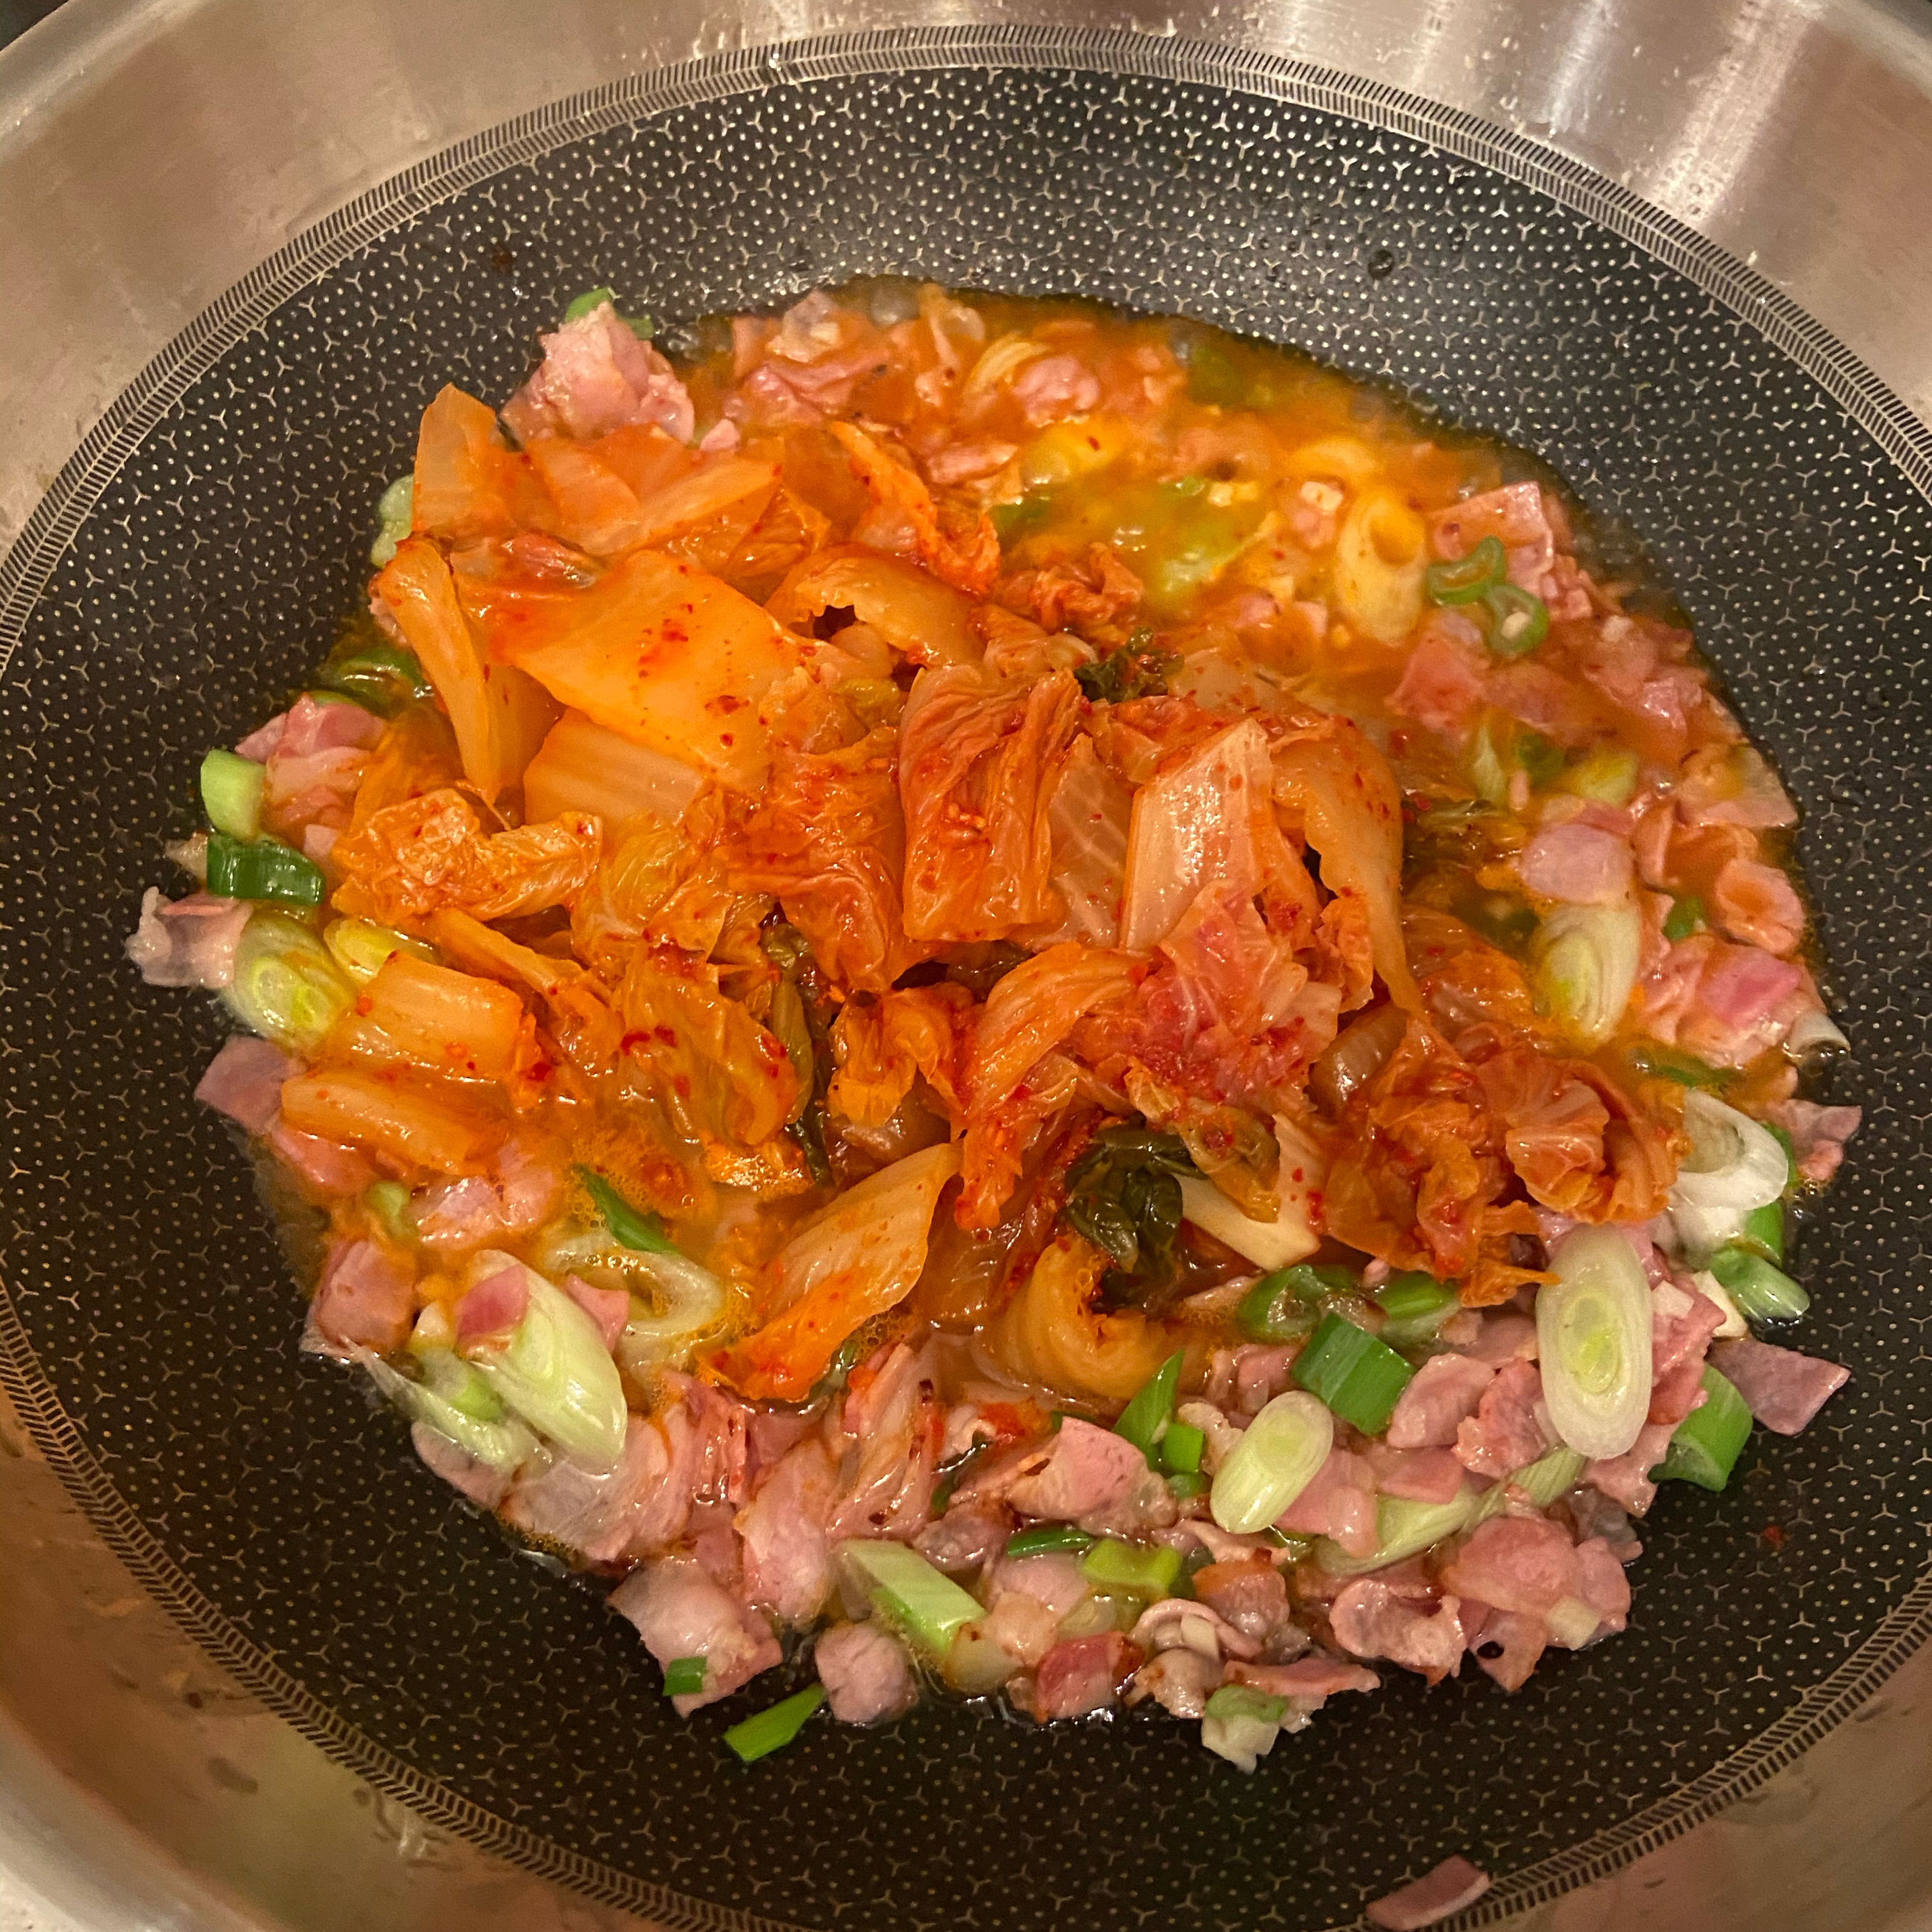 Kimchi und klein geschnittene Frühlingszwiebeln dazugeben und nochmal ca. 5 min. einreduzieren lassen.